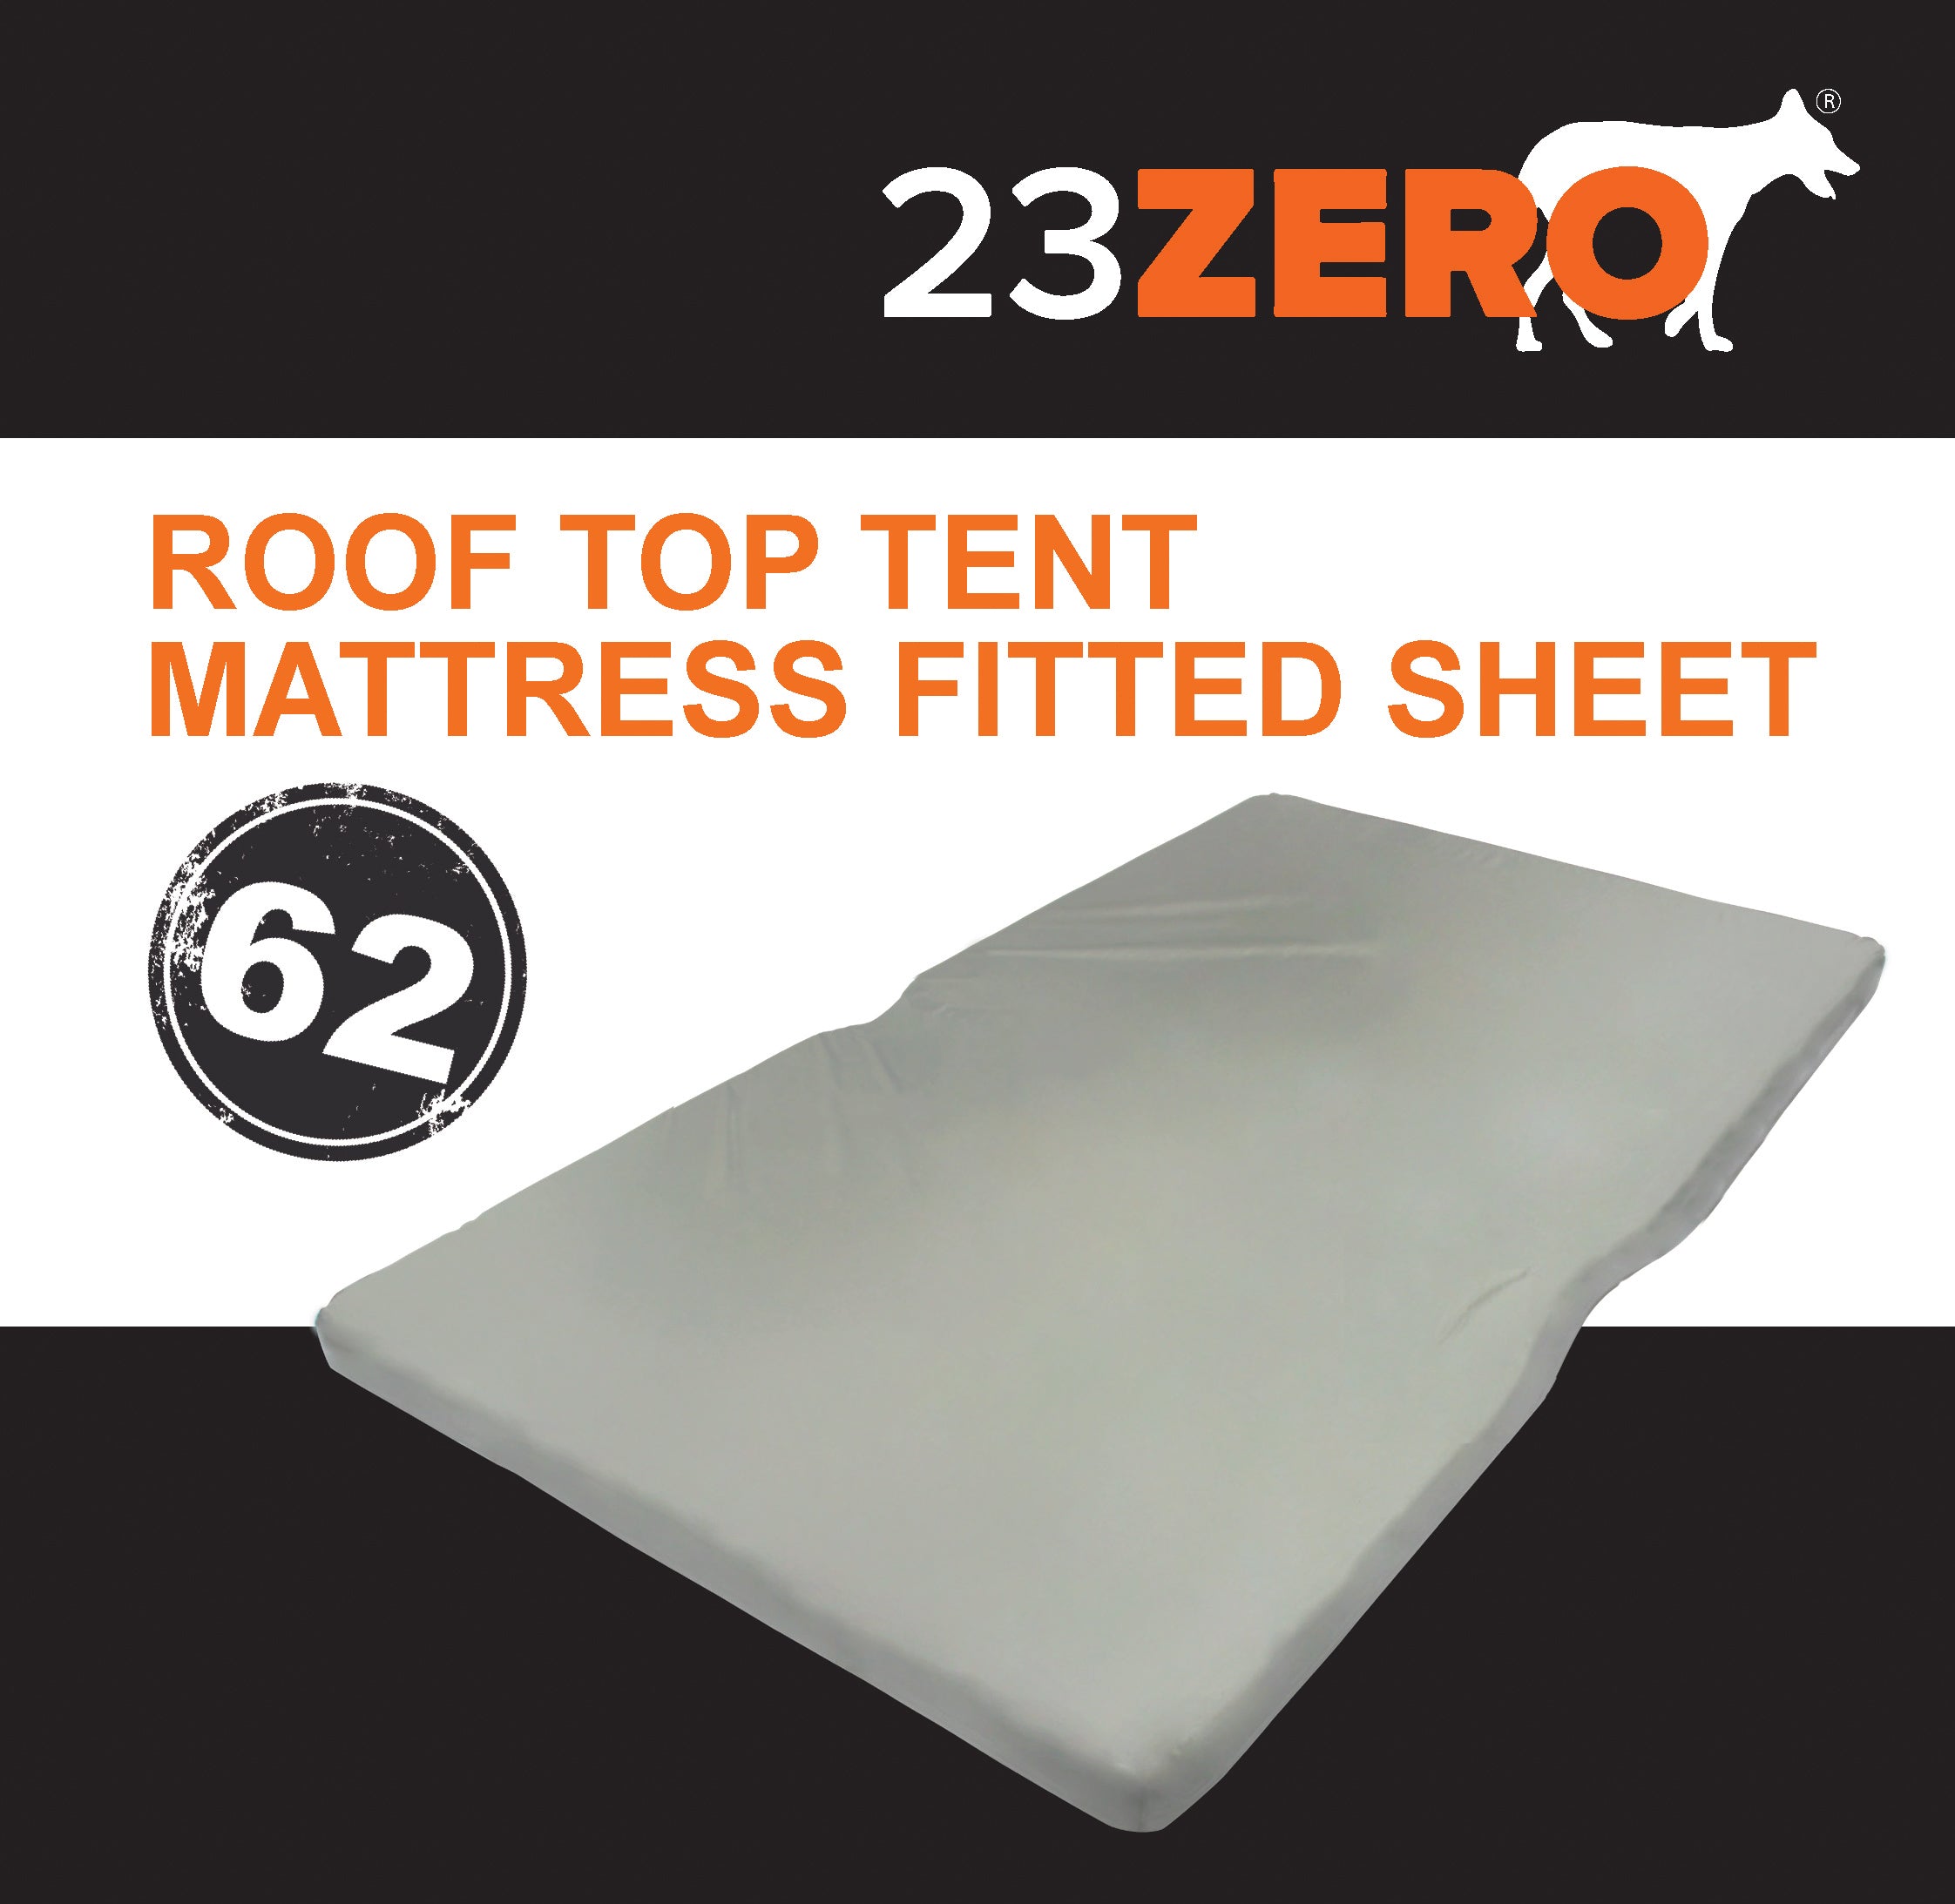 23Zero Roof Top Tent Mattress Fitted Sheet 62"